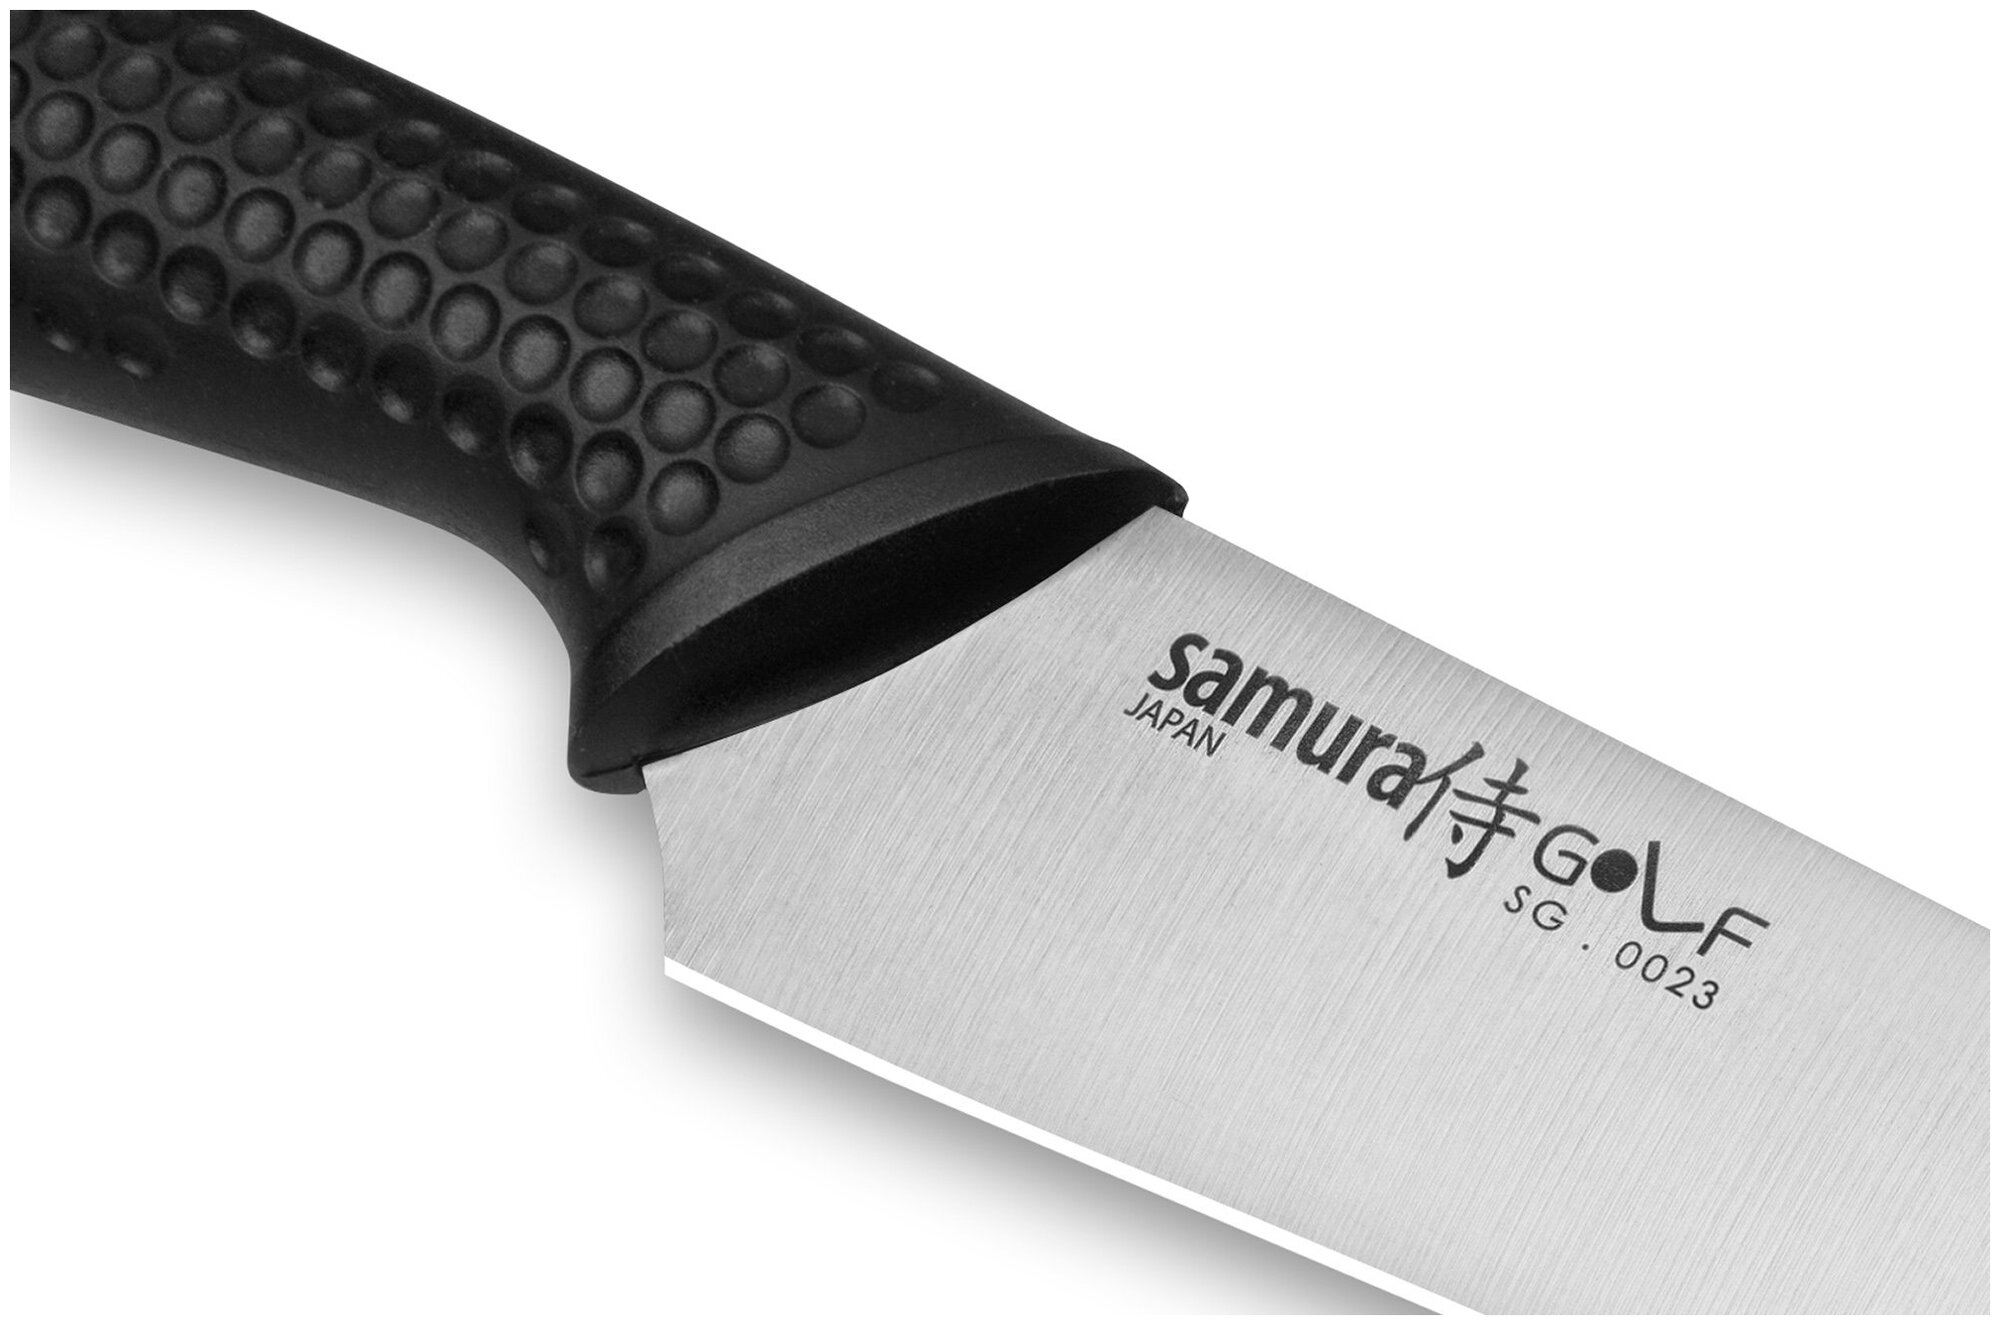 Нож кухонный универсальный Samura GOLF, 158 мм